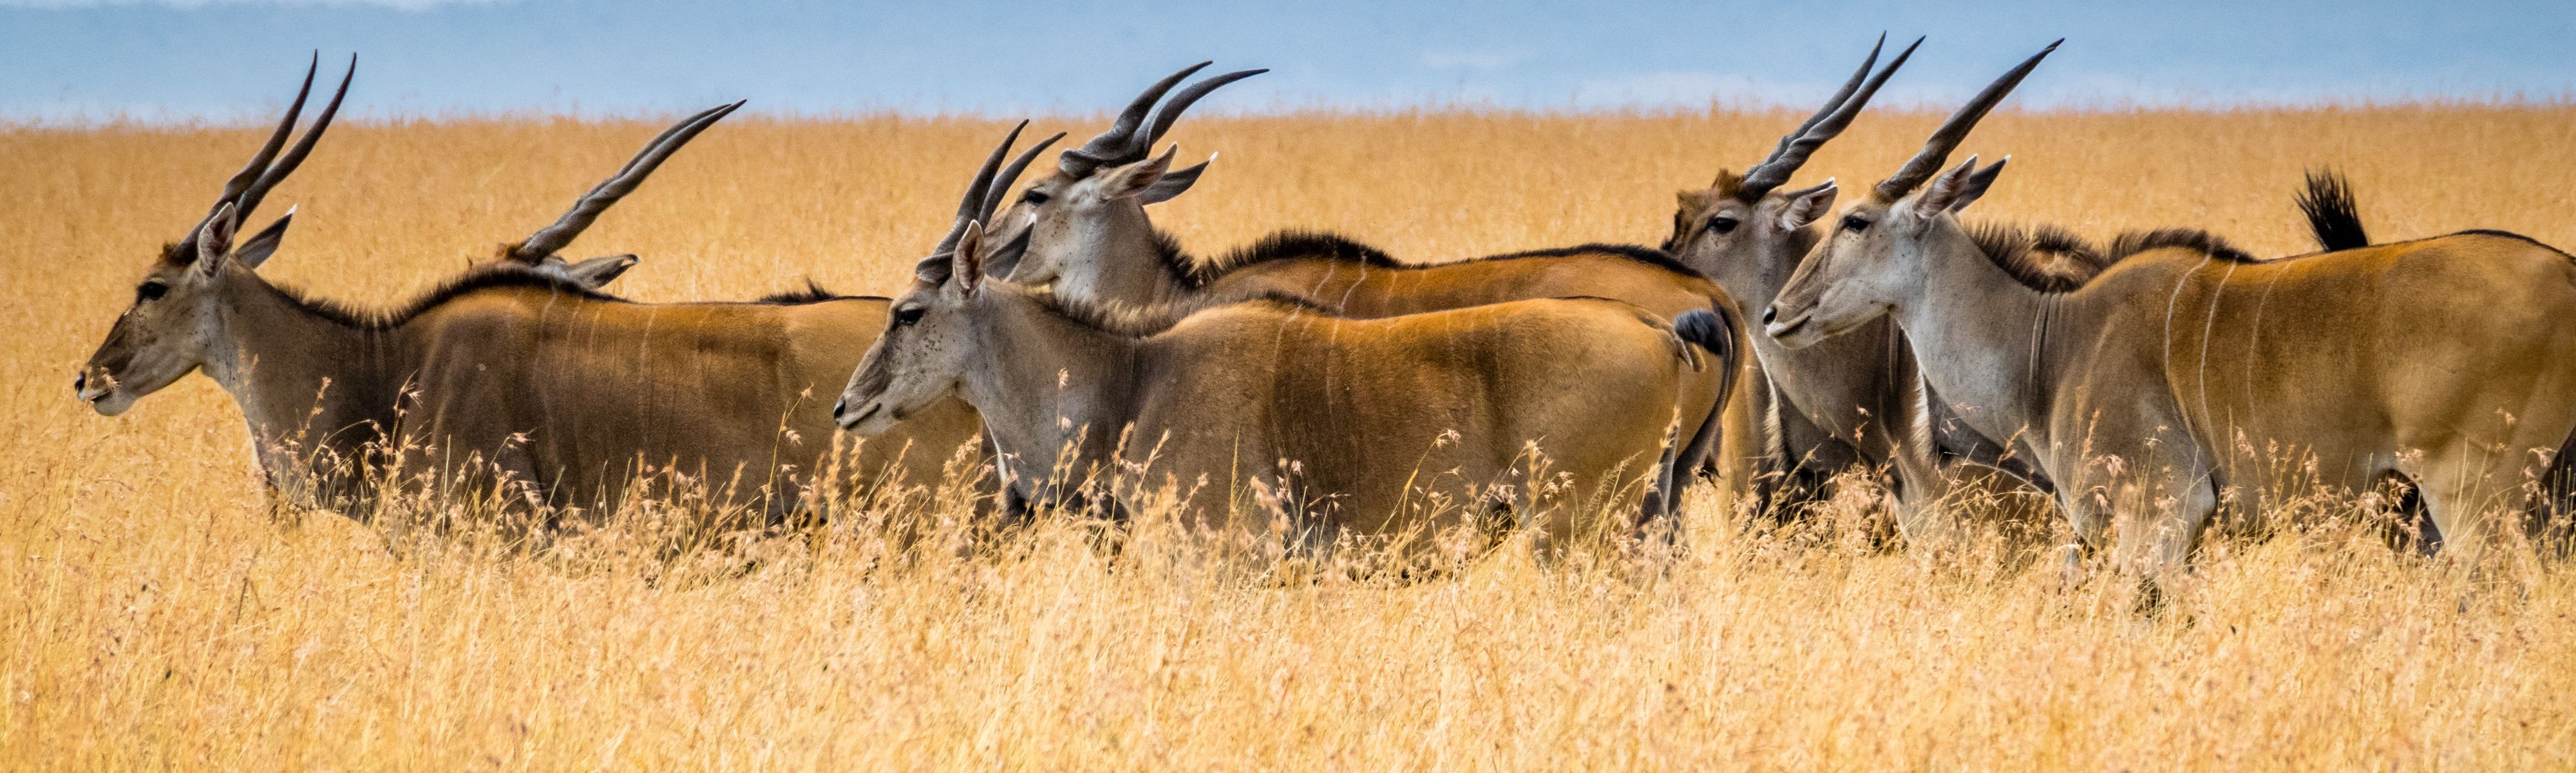 antelope walking through grassy field in maasai mara